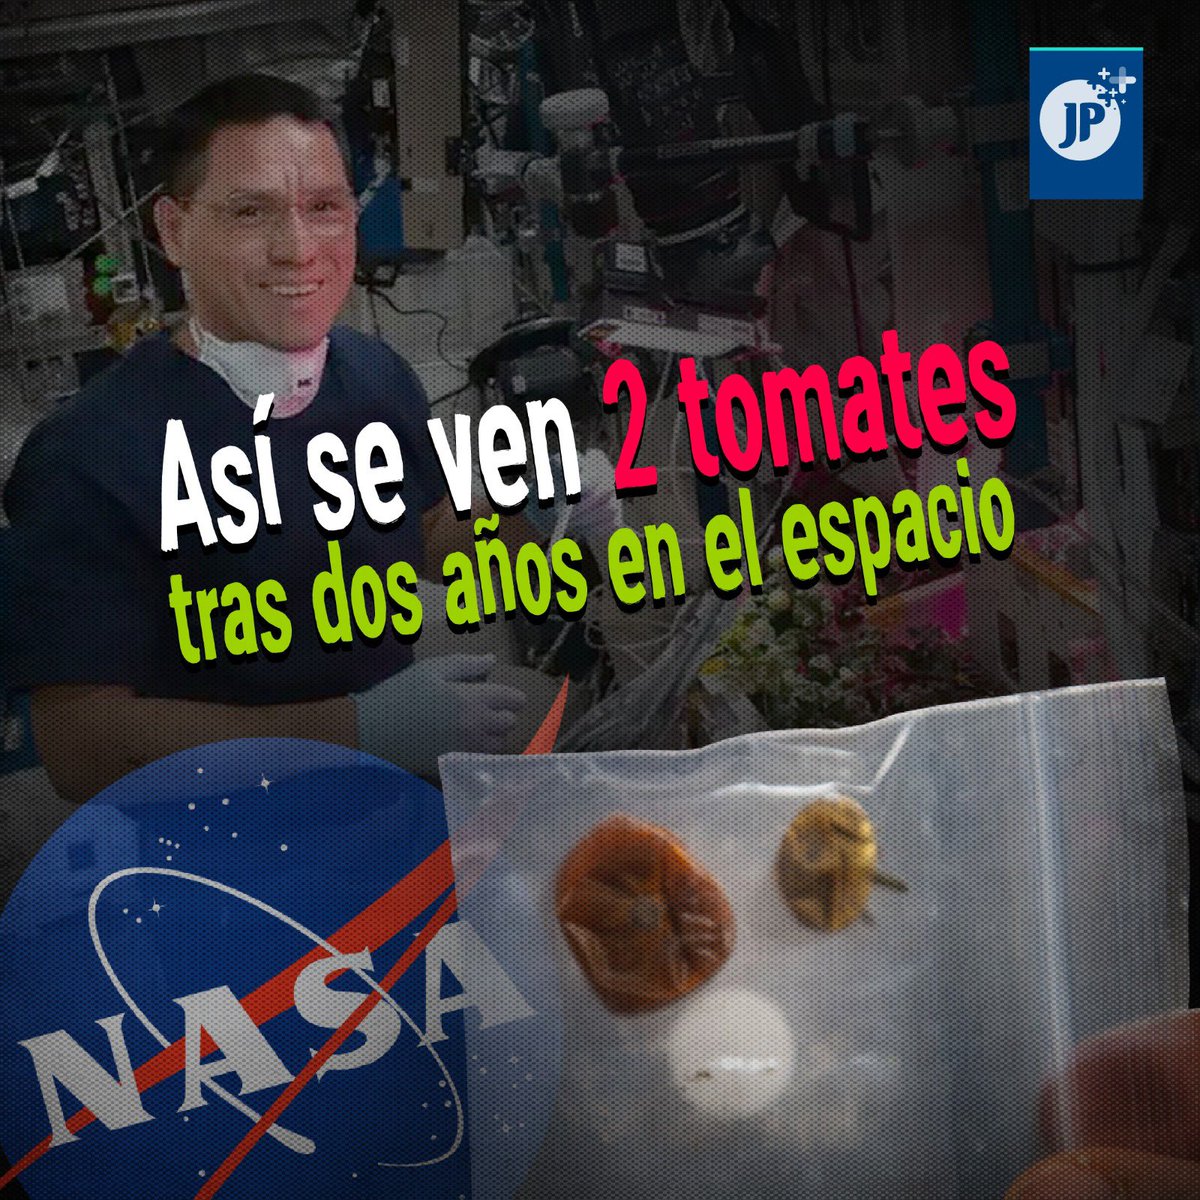 🍅🚀 La NASA revela información sobre dos tomates perdidos en la Estación Espacial Internacional, cultivados por el astronauta Frank Rubio como parte del proyecto XROOTS.

La agencia indica que los tomates no serán devueltos a la Tierra.